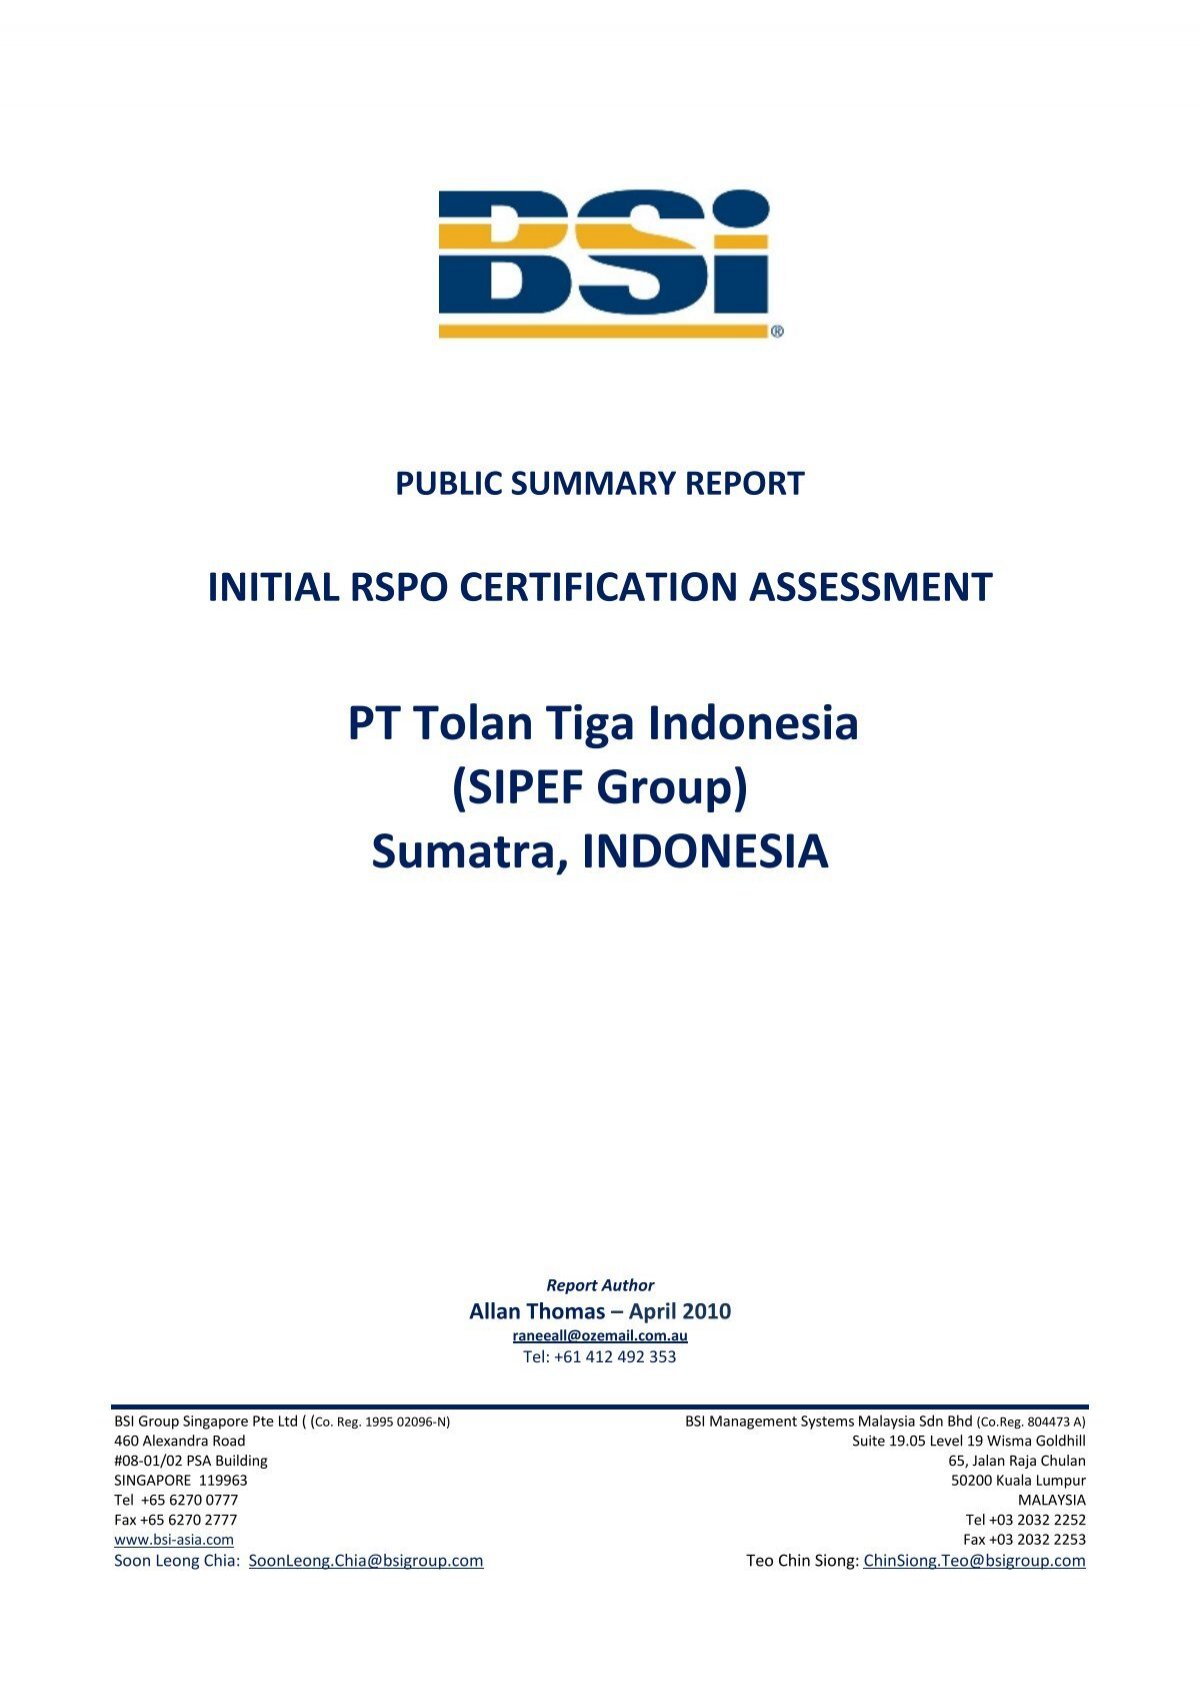 Pt Tolan Tiga Indonesia Sipef Group Sumatra Indonesia